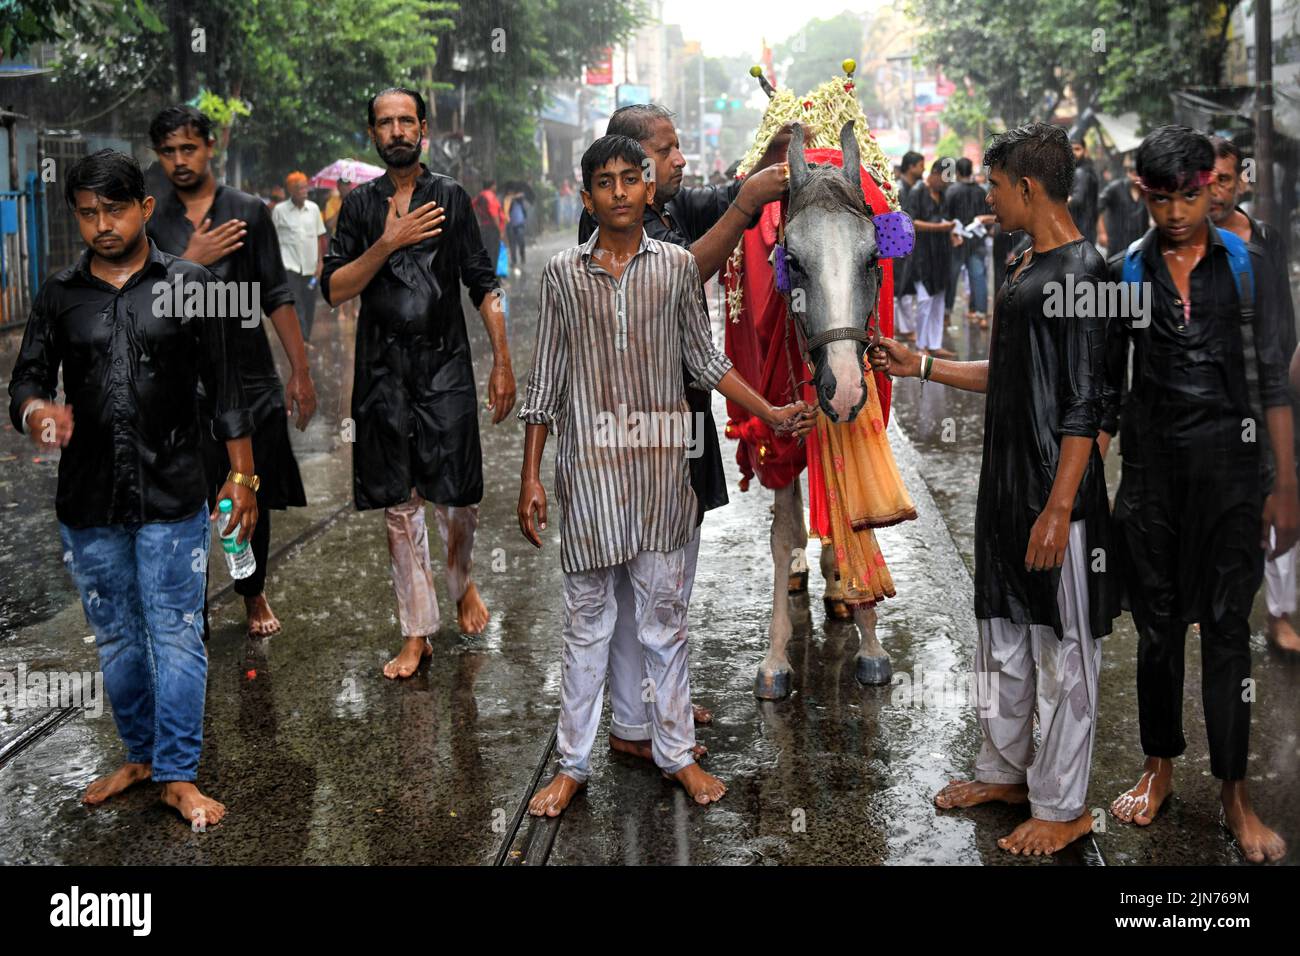 Devoto musulmán chiíta con un caballo santo durante la procesión Muharram de Kolkata. Muharram es el primer mes del calendario islámico y Ashura es el décimo día del mes de Muharram en el que se celebra la conmemoración del martirio del imán Hussain, nieto del profeta Mahoma (PBUH), durante la batalla de Karbala. Es parte del duelo por los musulmanes chiítas y un día de ayuno para los musulmanes sunitas que se observa en todo el mundo. Foto de stock